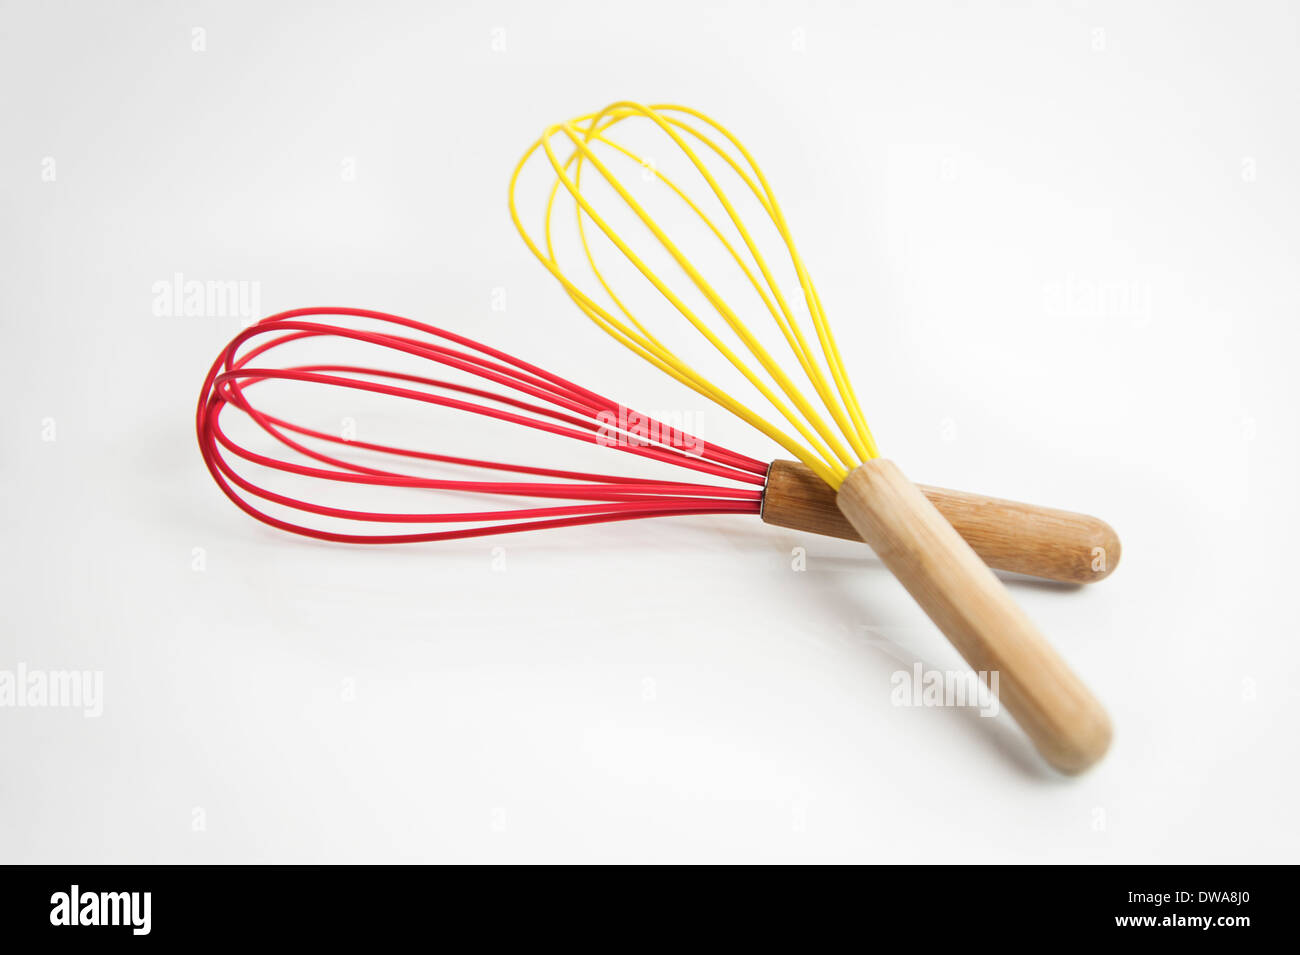 colorful whisks, kitchen utensils, kitchenware Stock Photo